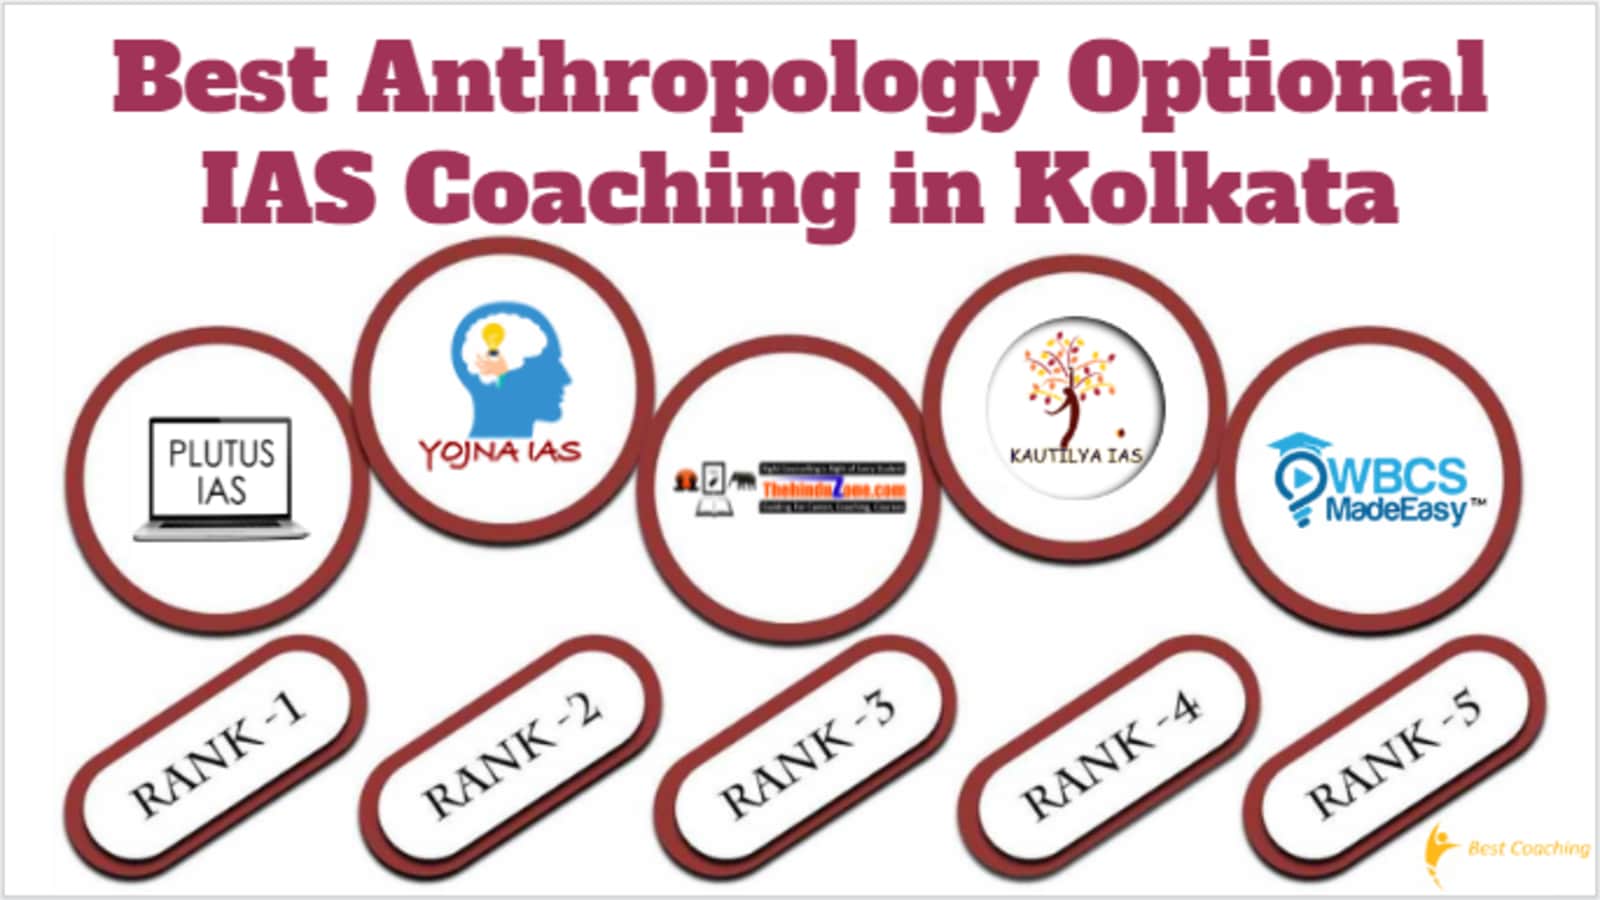 Best Anthropology Optional IAS Coaching in Kolkata